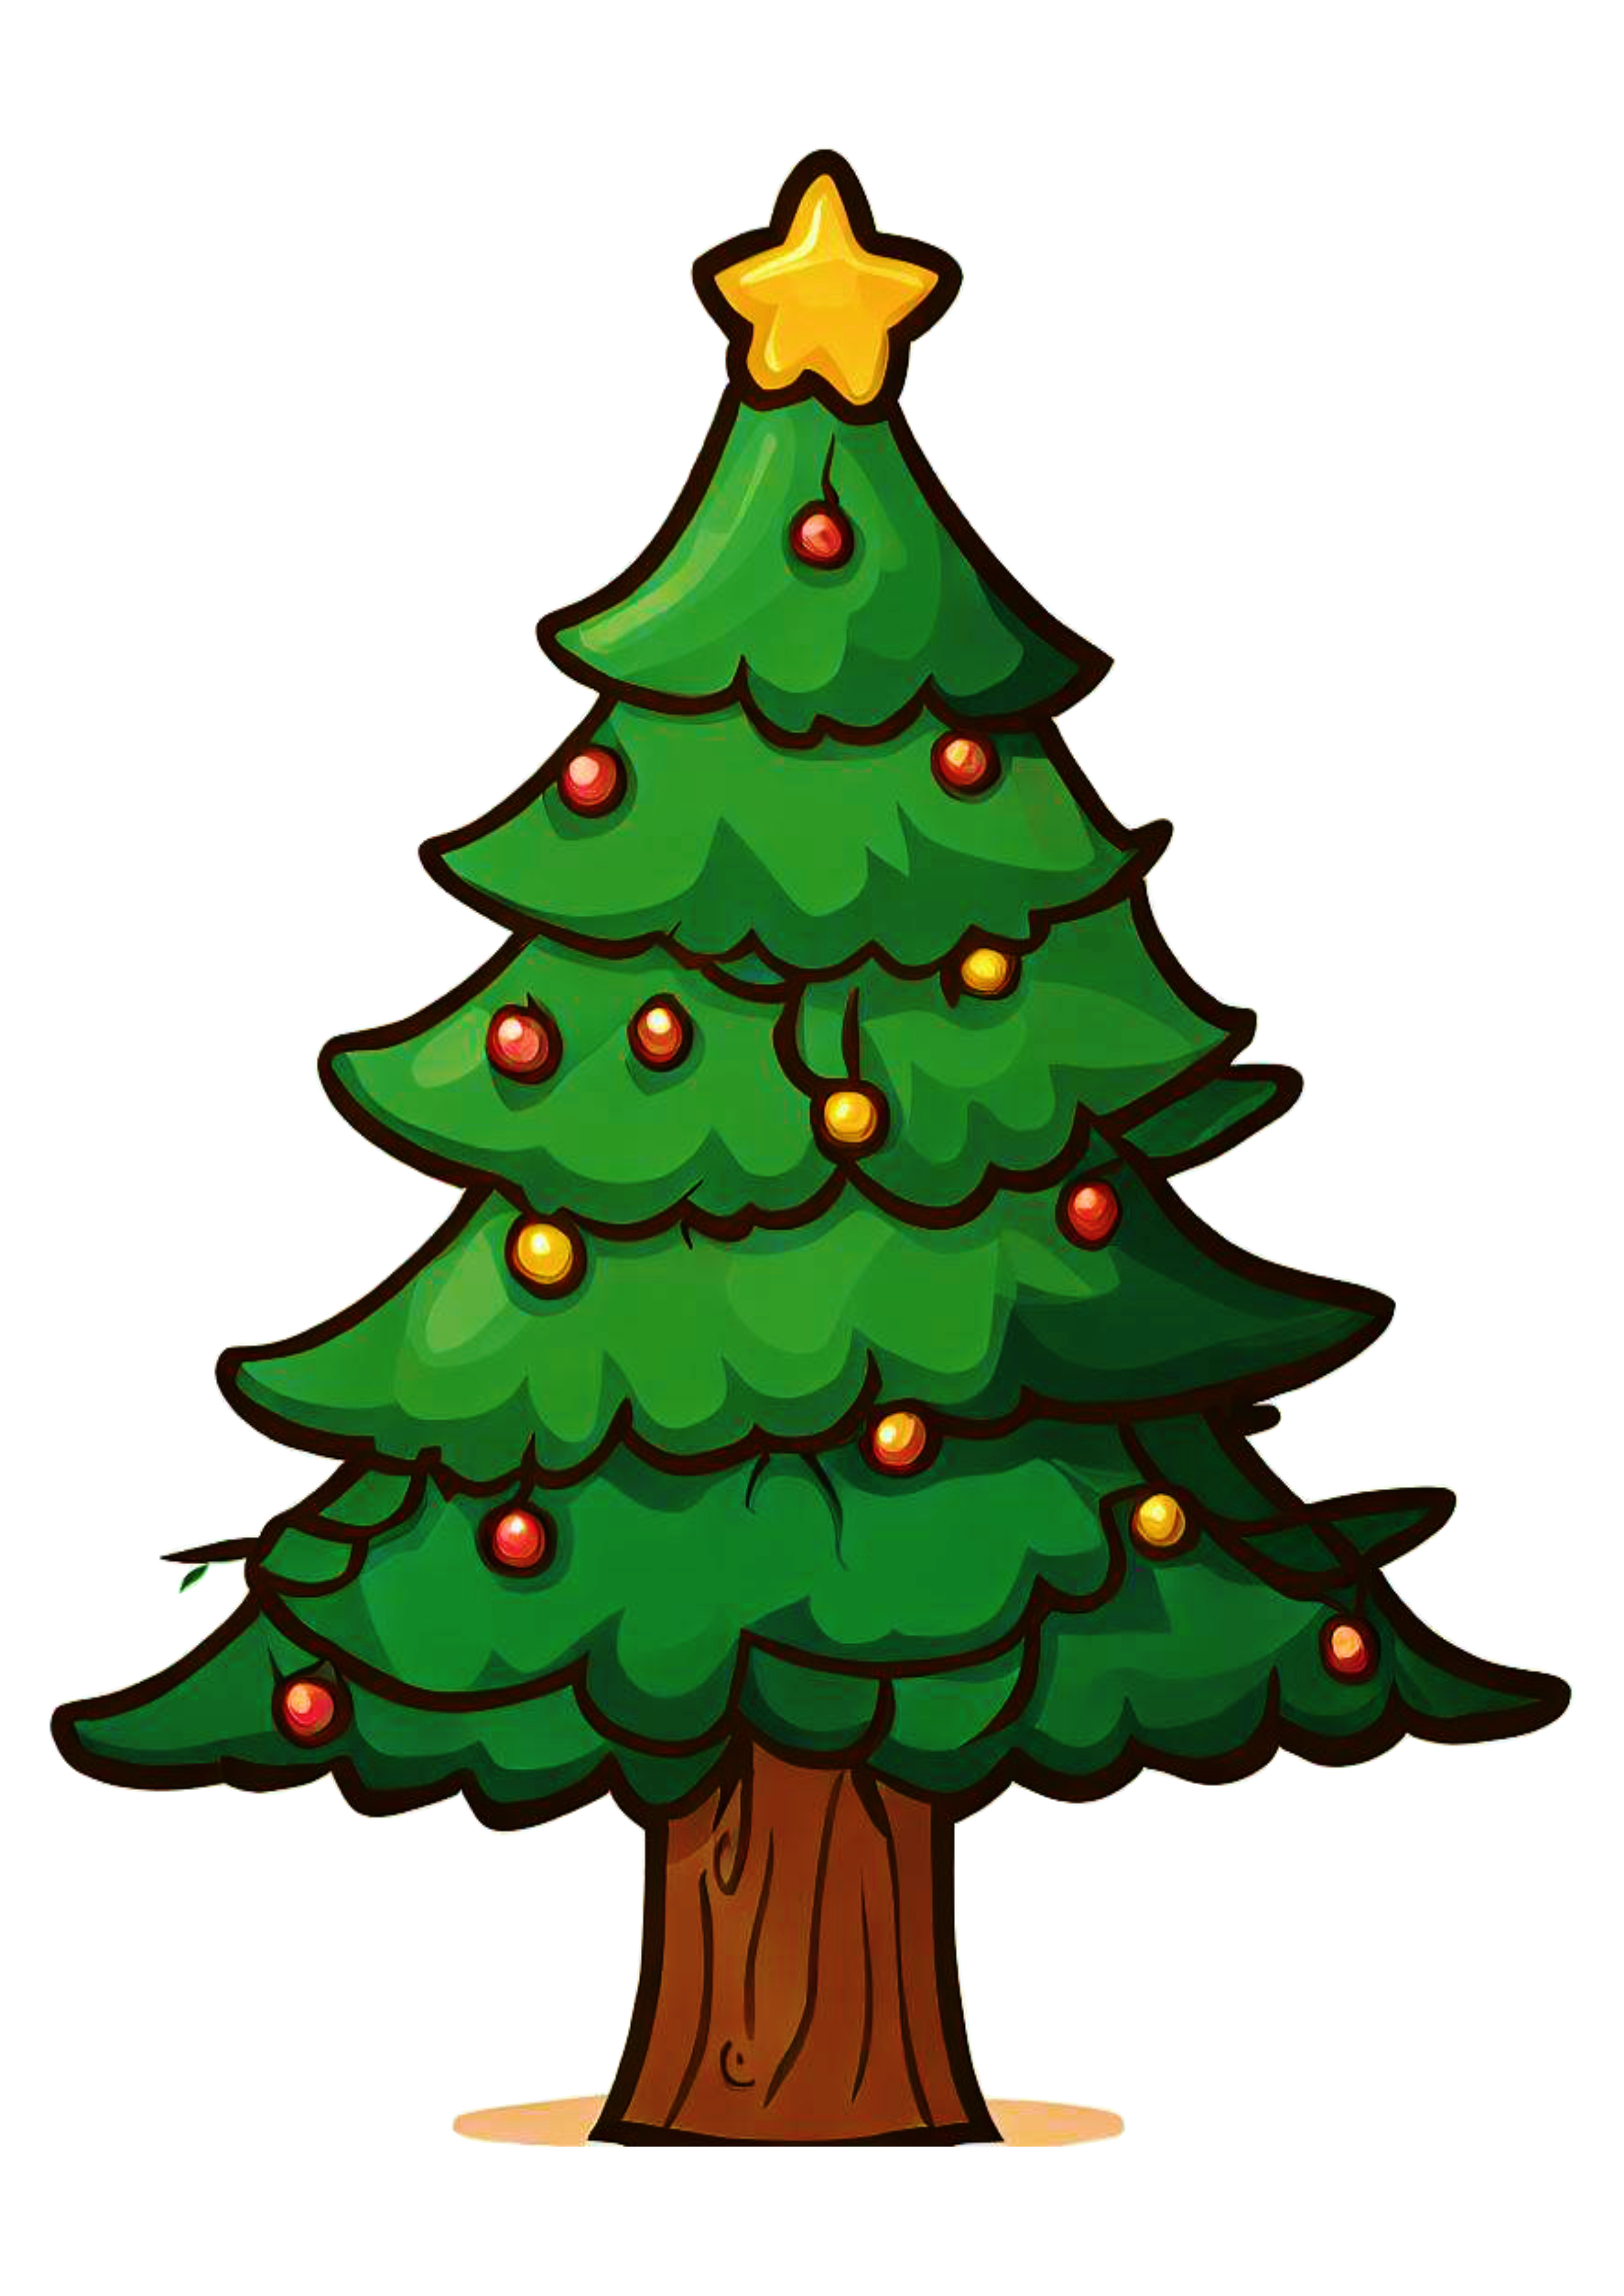 Árvore de natal desenho simples decoração natalina merry christmas ilustração artes gráficas png